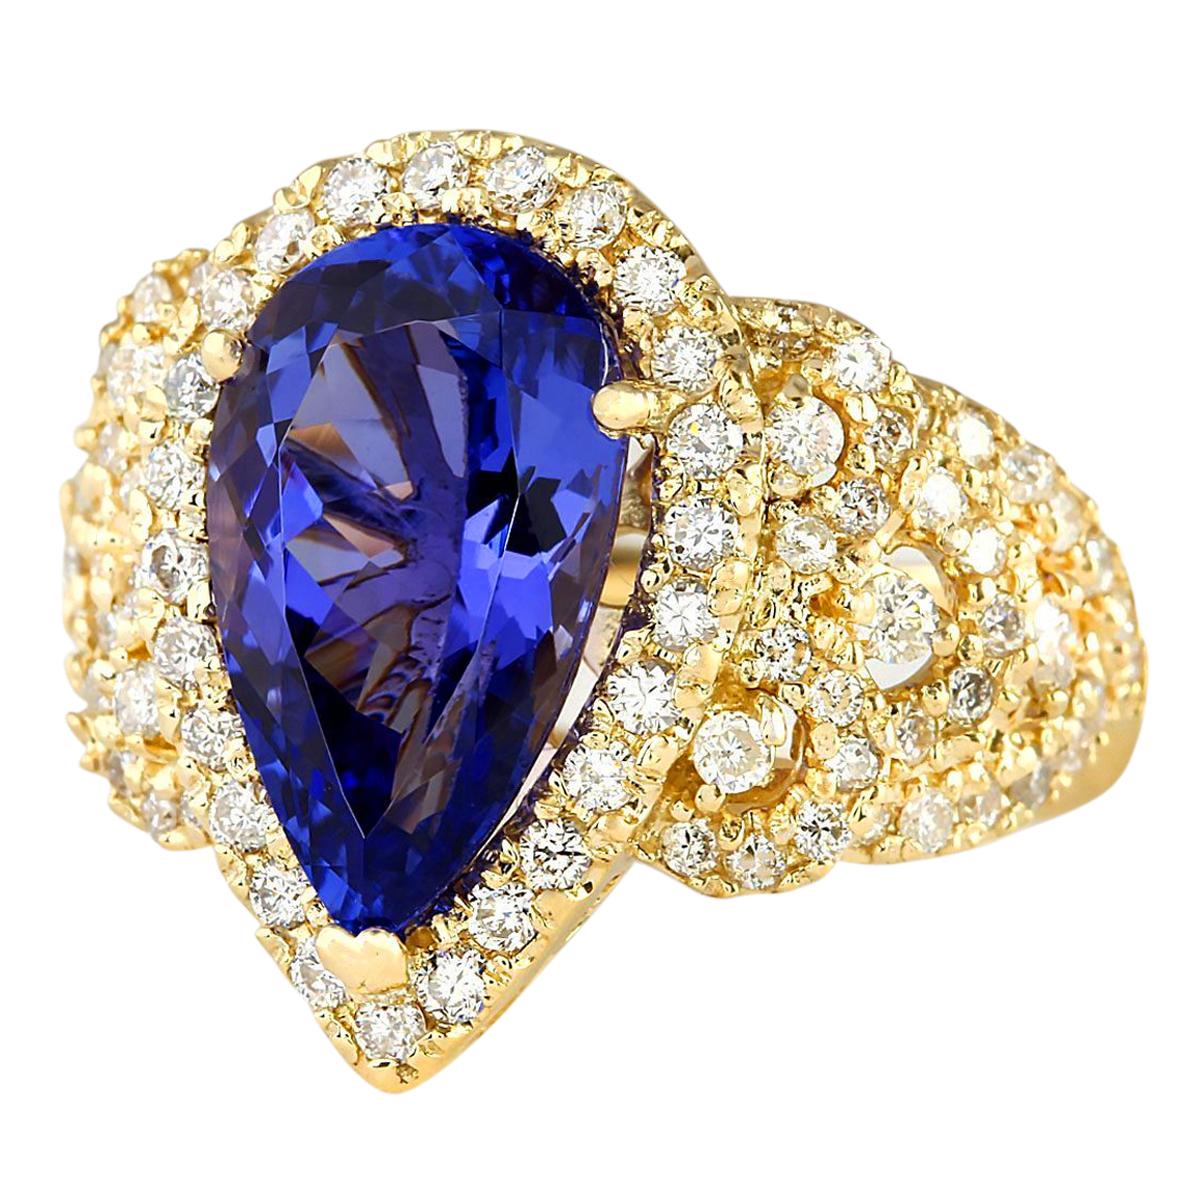 6.75 Carat Tanzanite 14 Karat Yellow Gold Diamond Ring
Stamped: 14K Yellow Gold
Total Ring Weight: 10.0 Grams
Total  Tanzanite Weight is 5.35 Carat (Measures: 15.00x9.00 mm)
Color: Blue
 Total  Diamond Weight is 1.40 Carat
Color: F-G, Clarity: